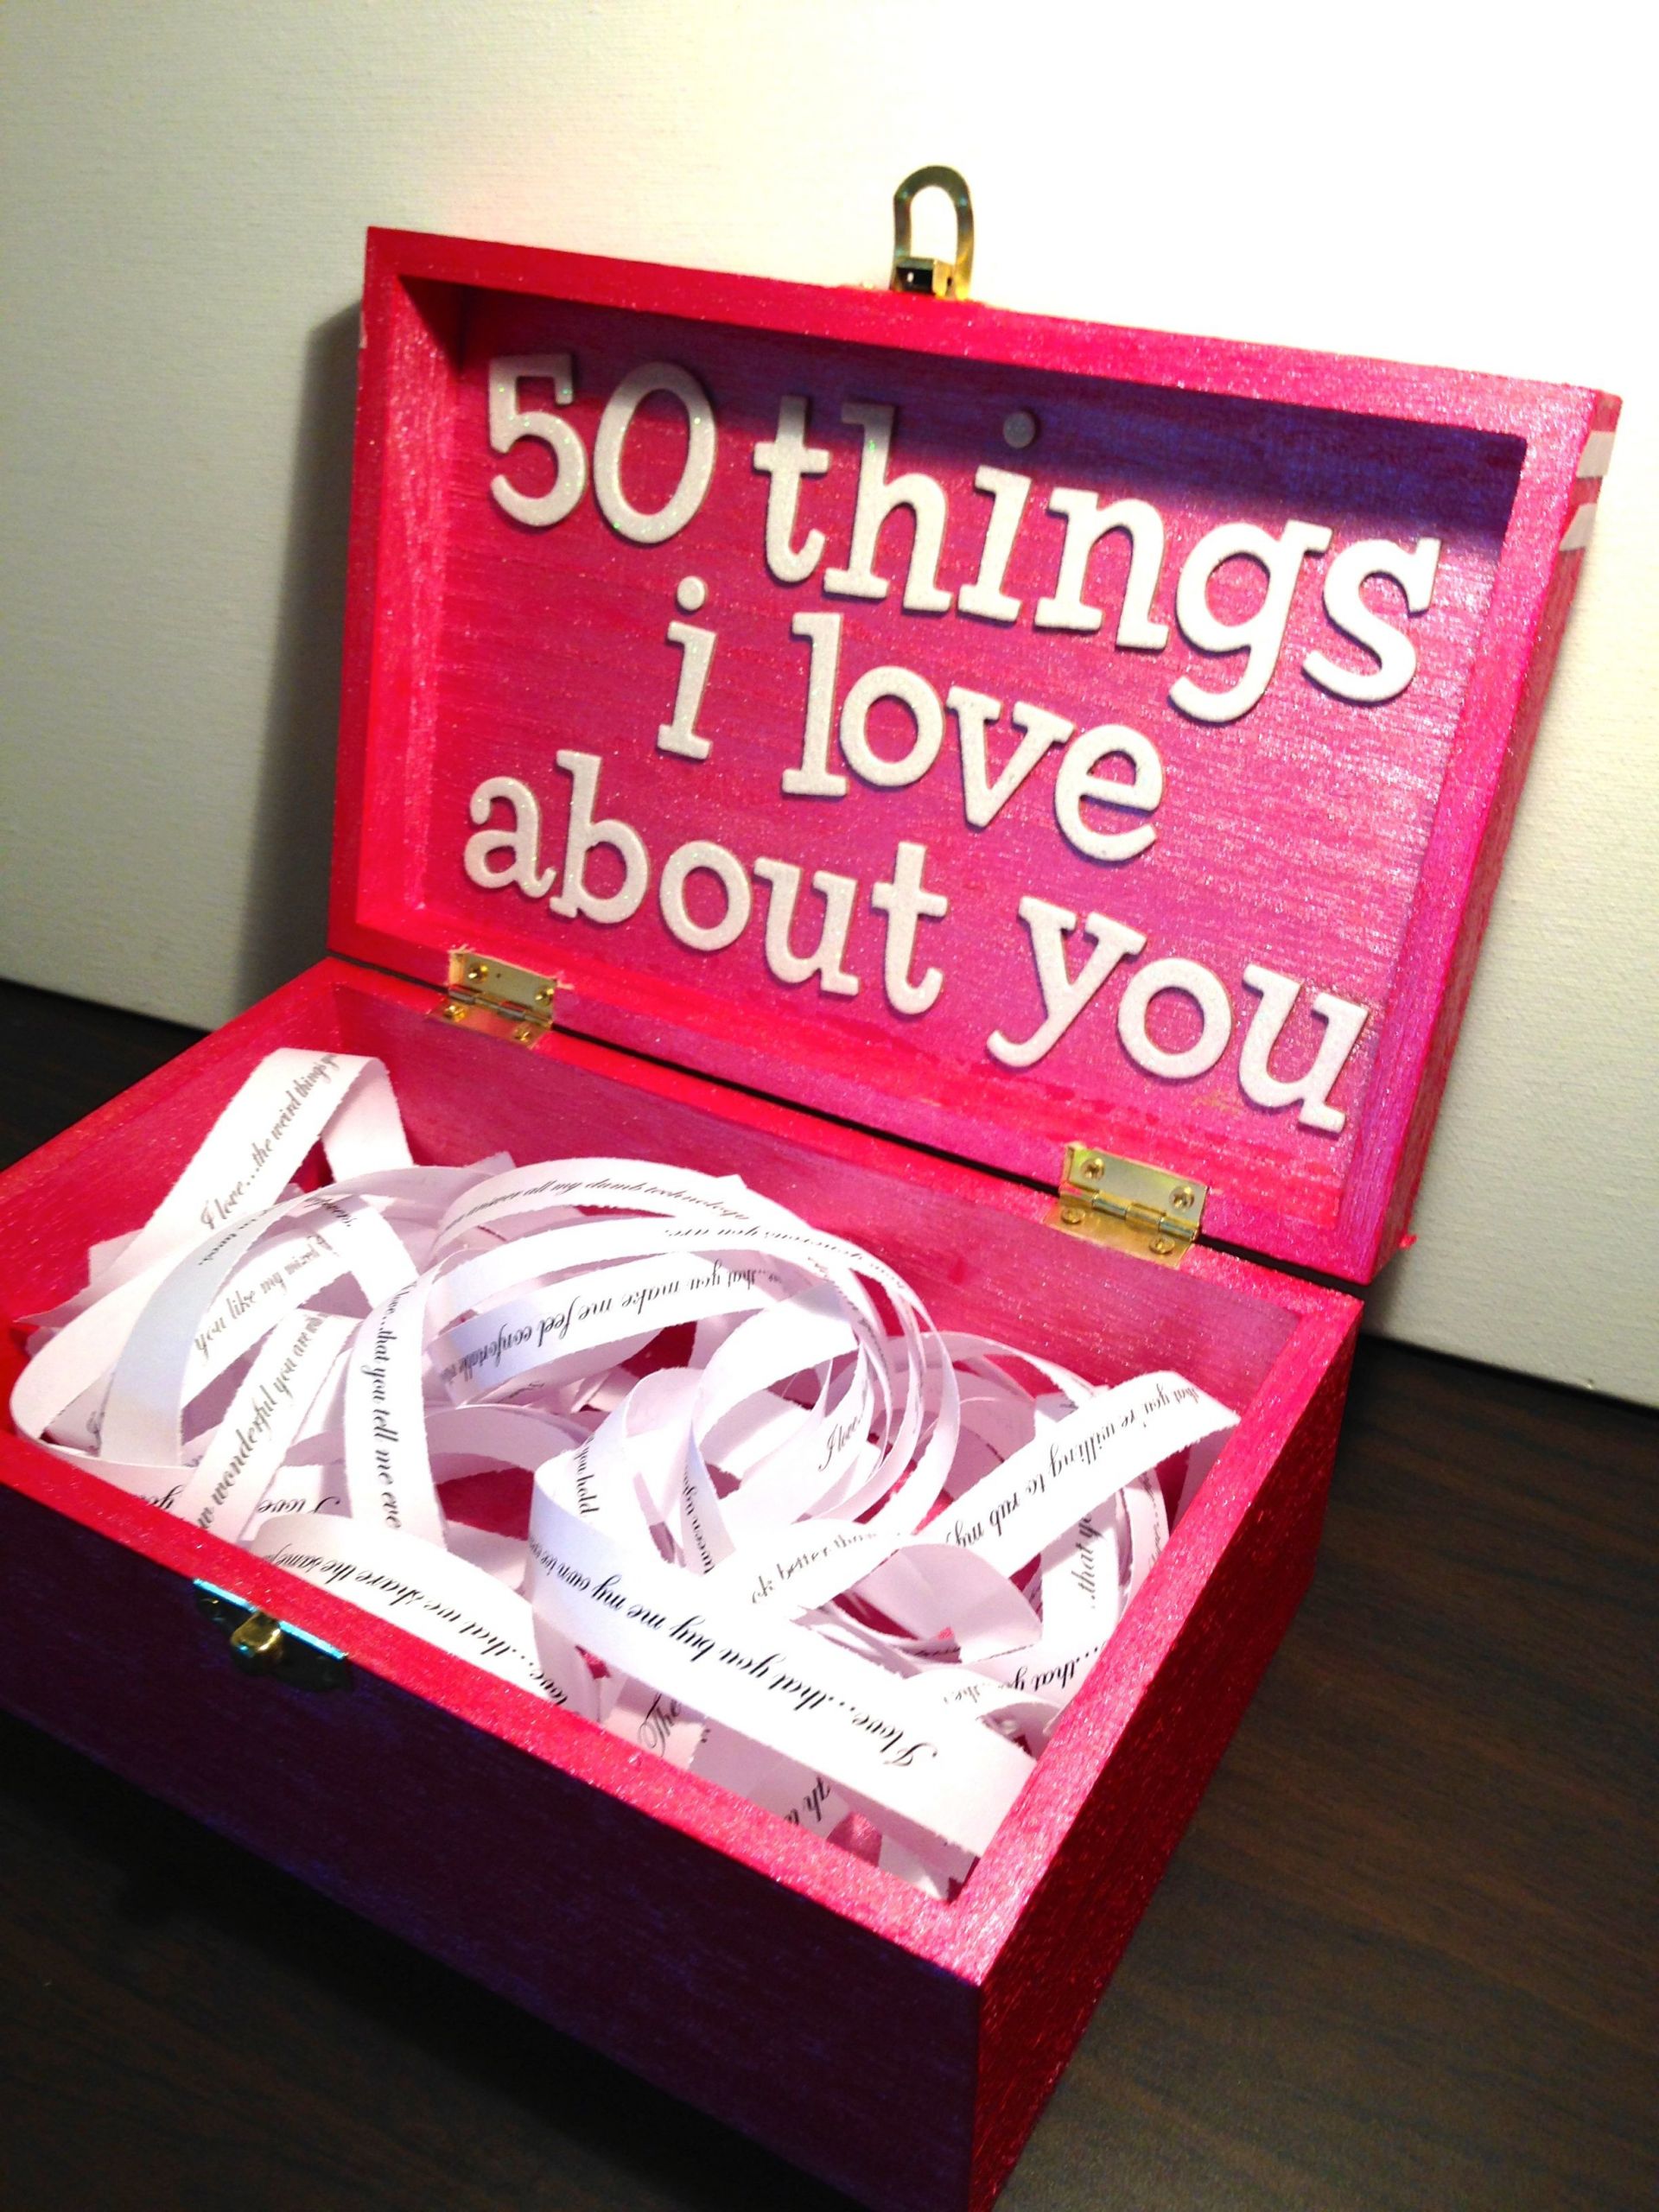 Sweet Gift Ideas For Girlfriends
 Boyfriend Girlfriend t ideas for birthday valentine